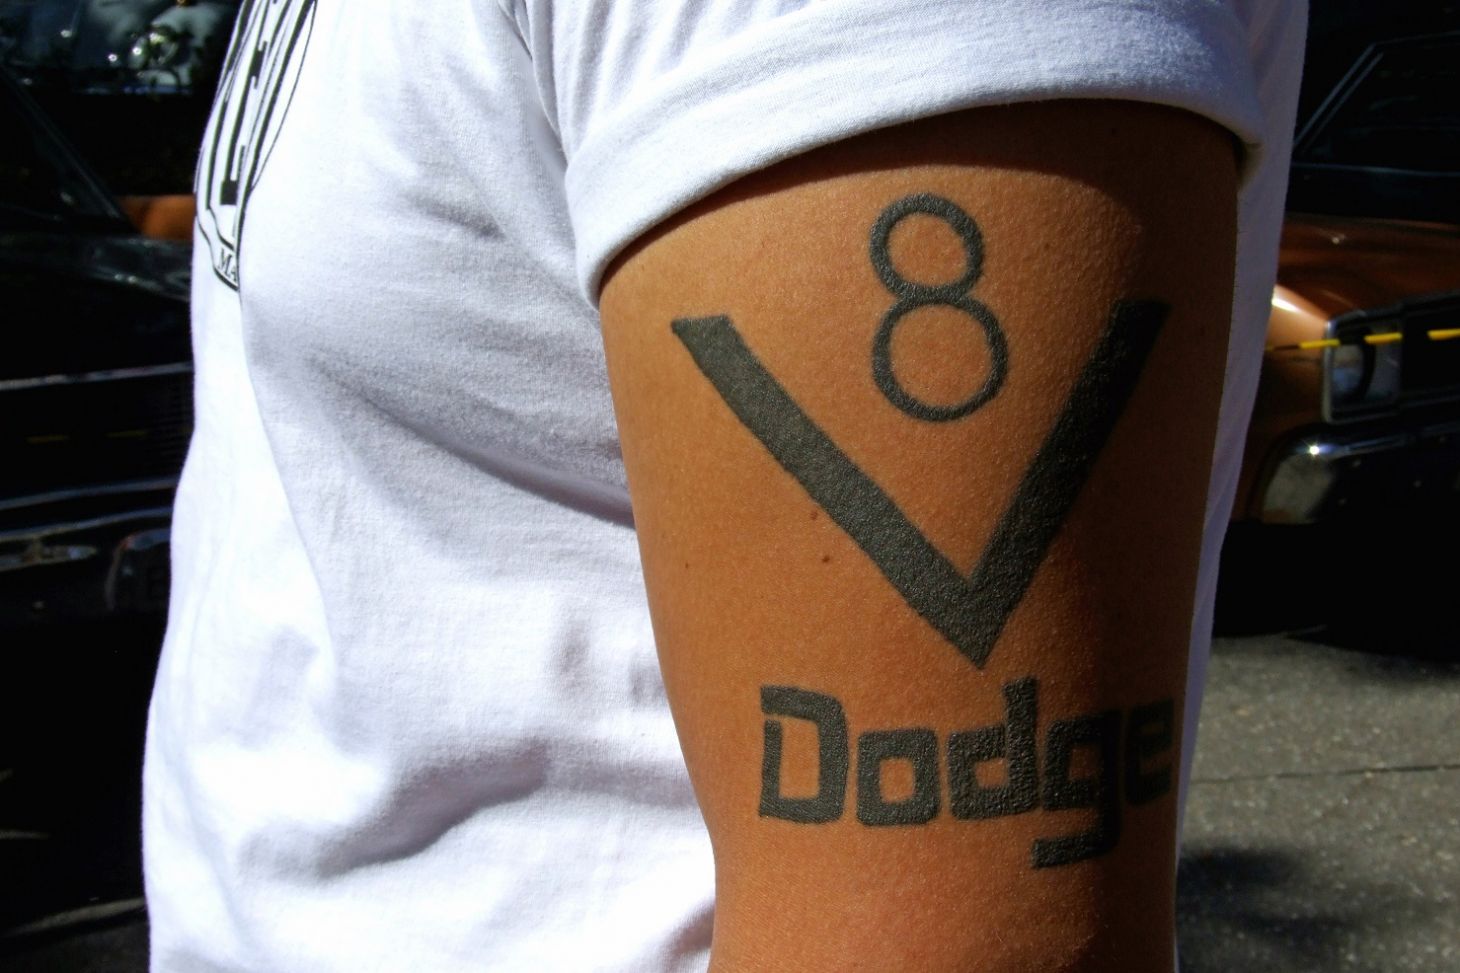 homem com tatuagem exaltando motor v8 da marca dodge